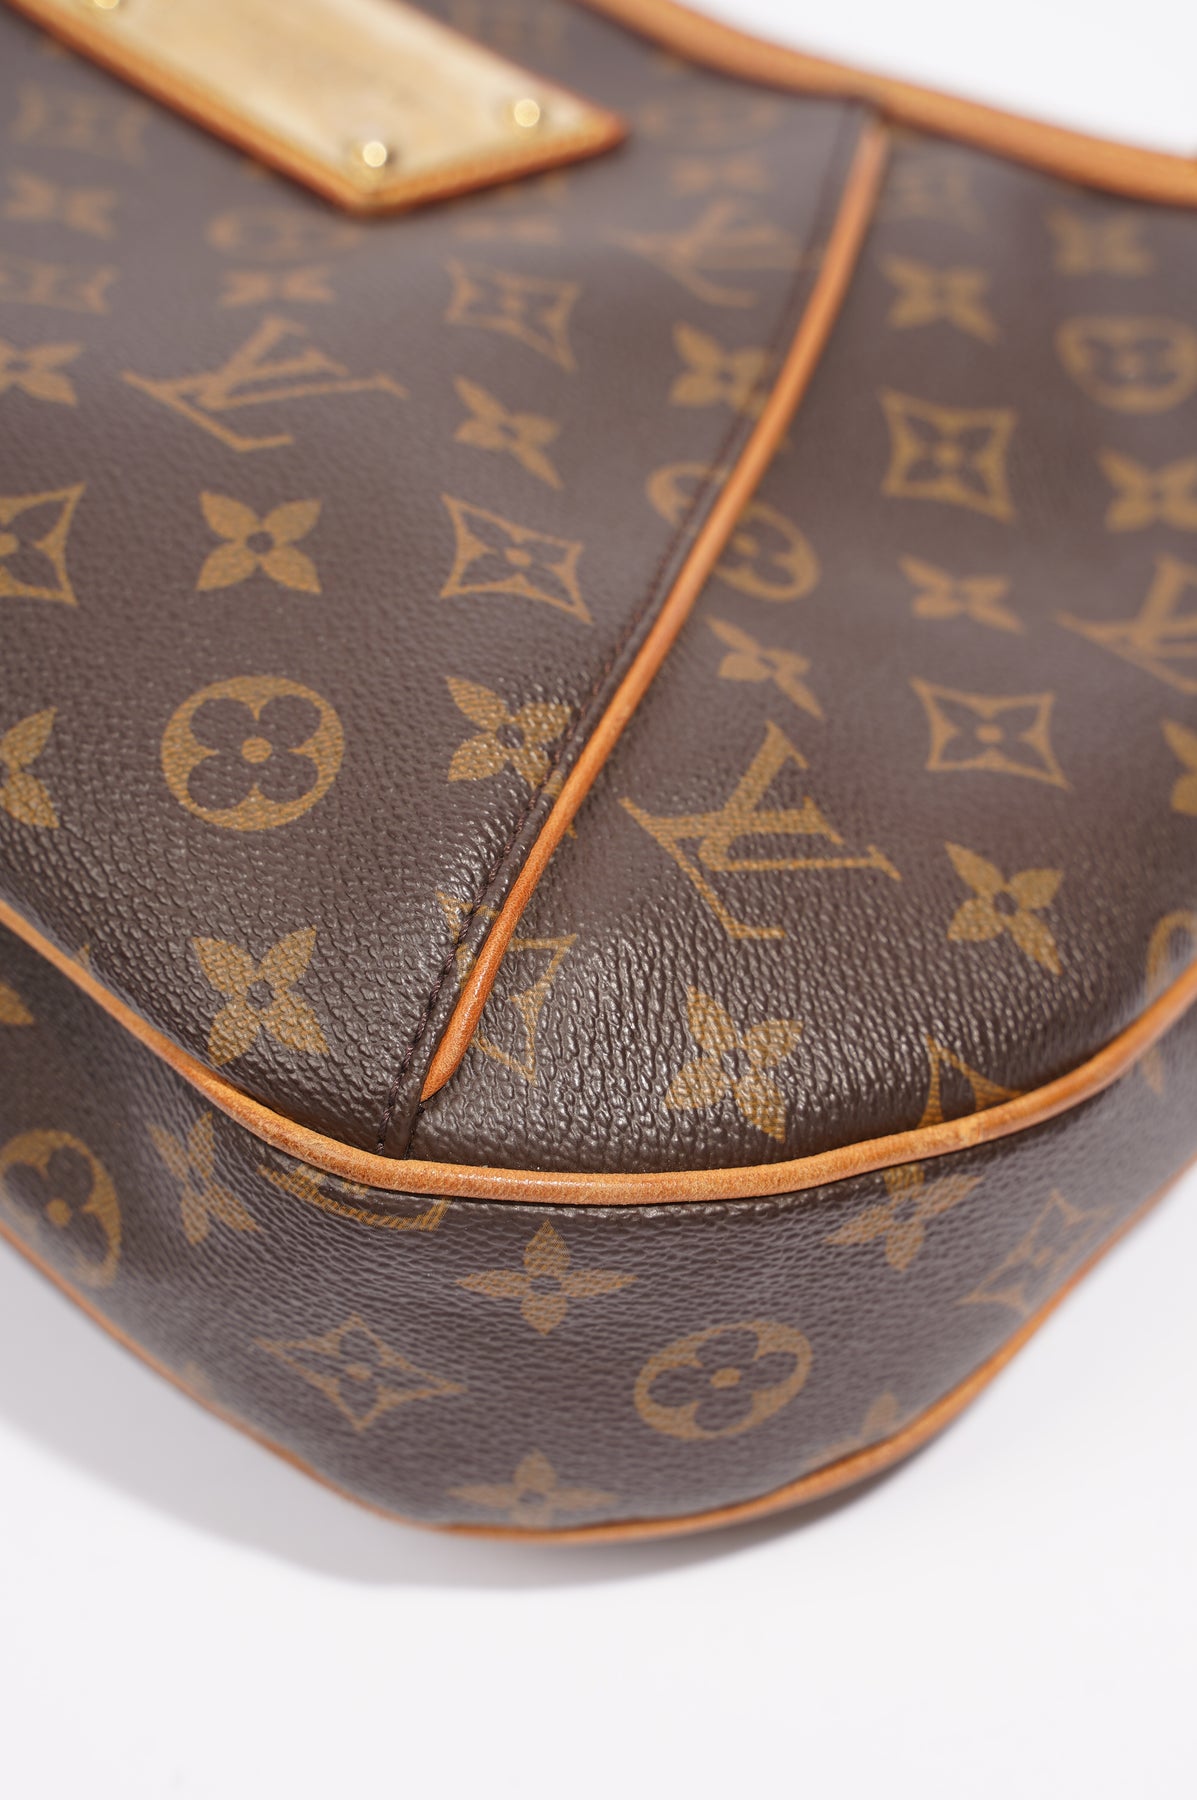 PreOwned Louis Vuitton Handbags in PreOwned Designer Handbags   Walmartcom